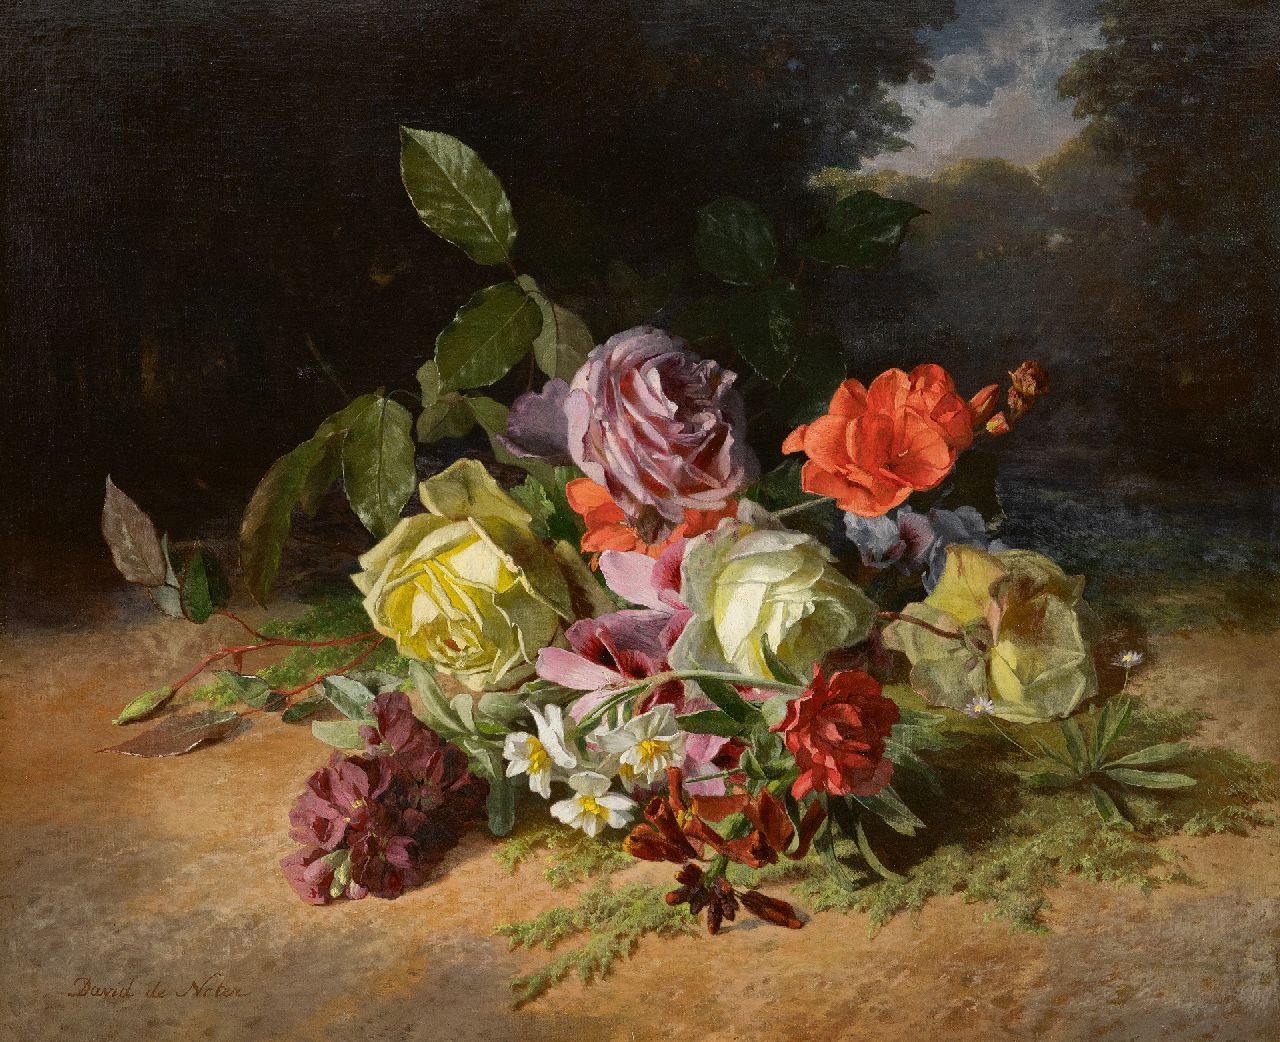 Noter D.E.J. de | 'David' Emile Joseph de Noter | Gemälde zum Verkauf angeboten | Rosen und Sommerblumen auf dem Waldboden, Öl auf Leinwand 46,3 x 55,1 cm, Unterzeichnet u.l.